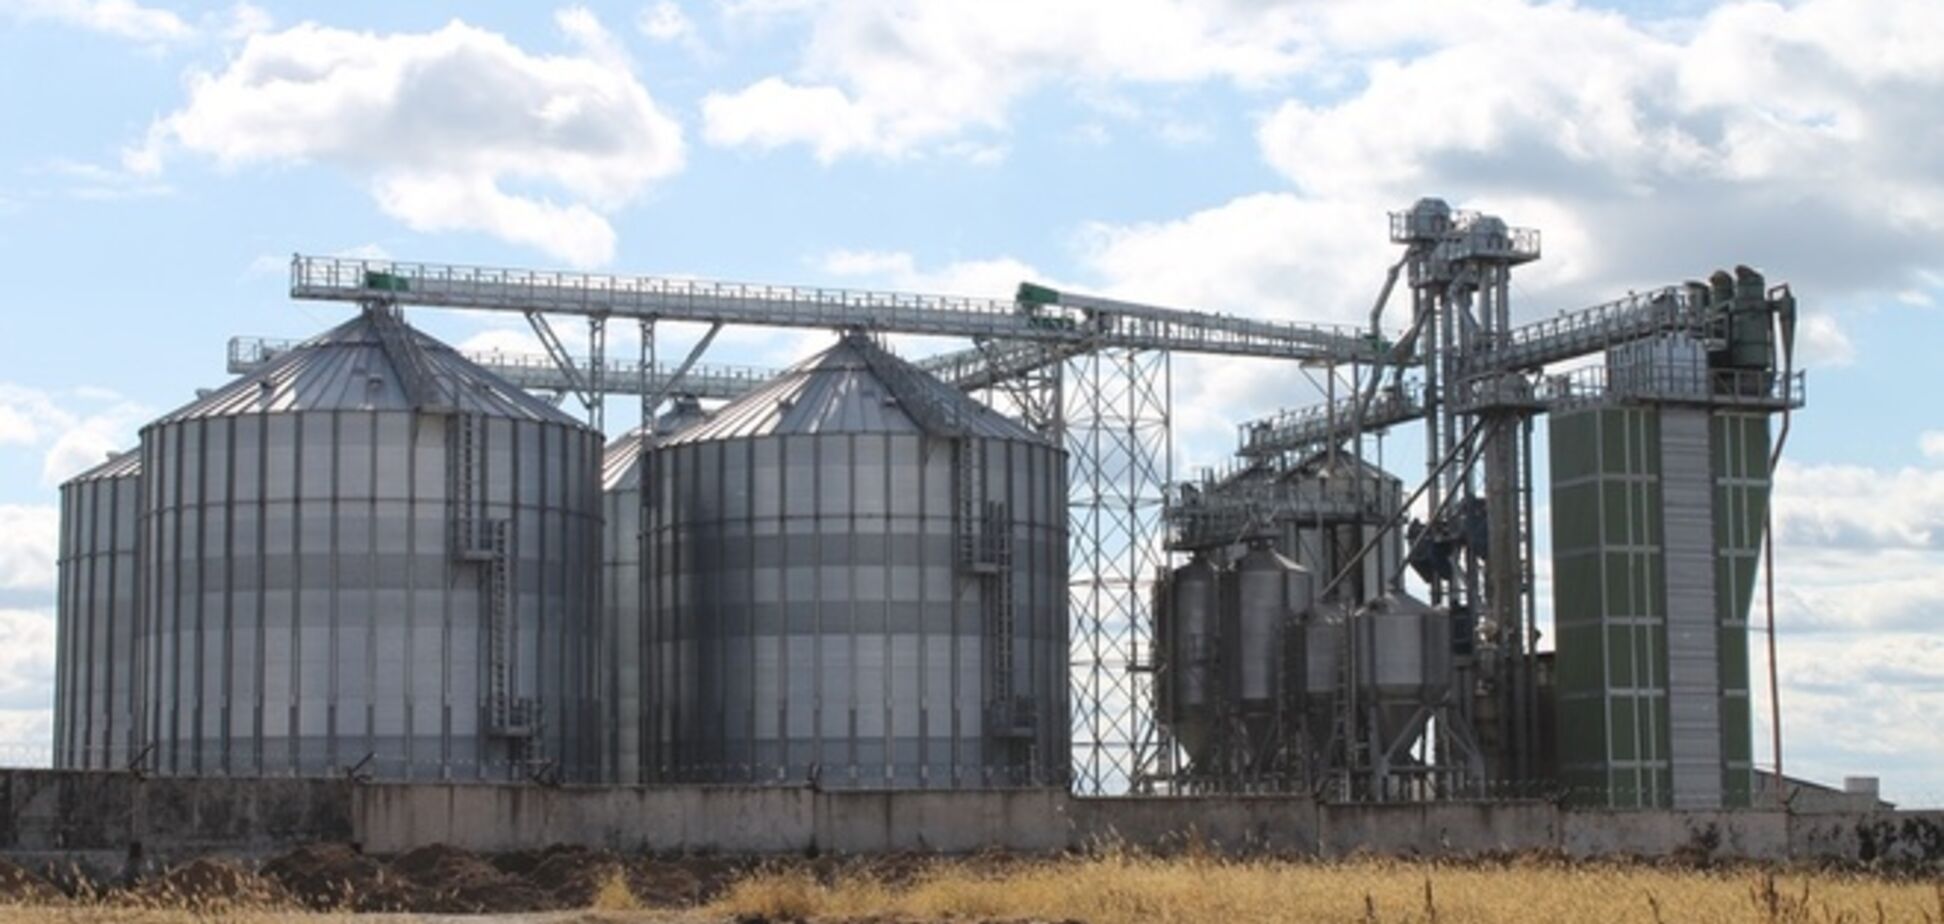 Ukrlandfarming будет экспортировать зерно в Европу из перевалочного комплекса в Львовской области